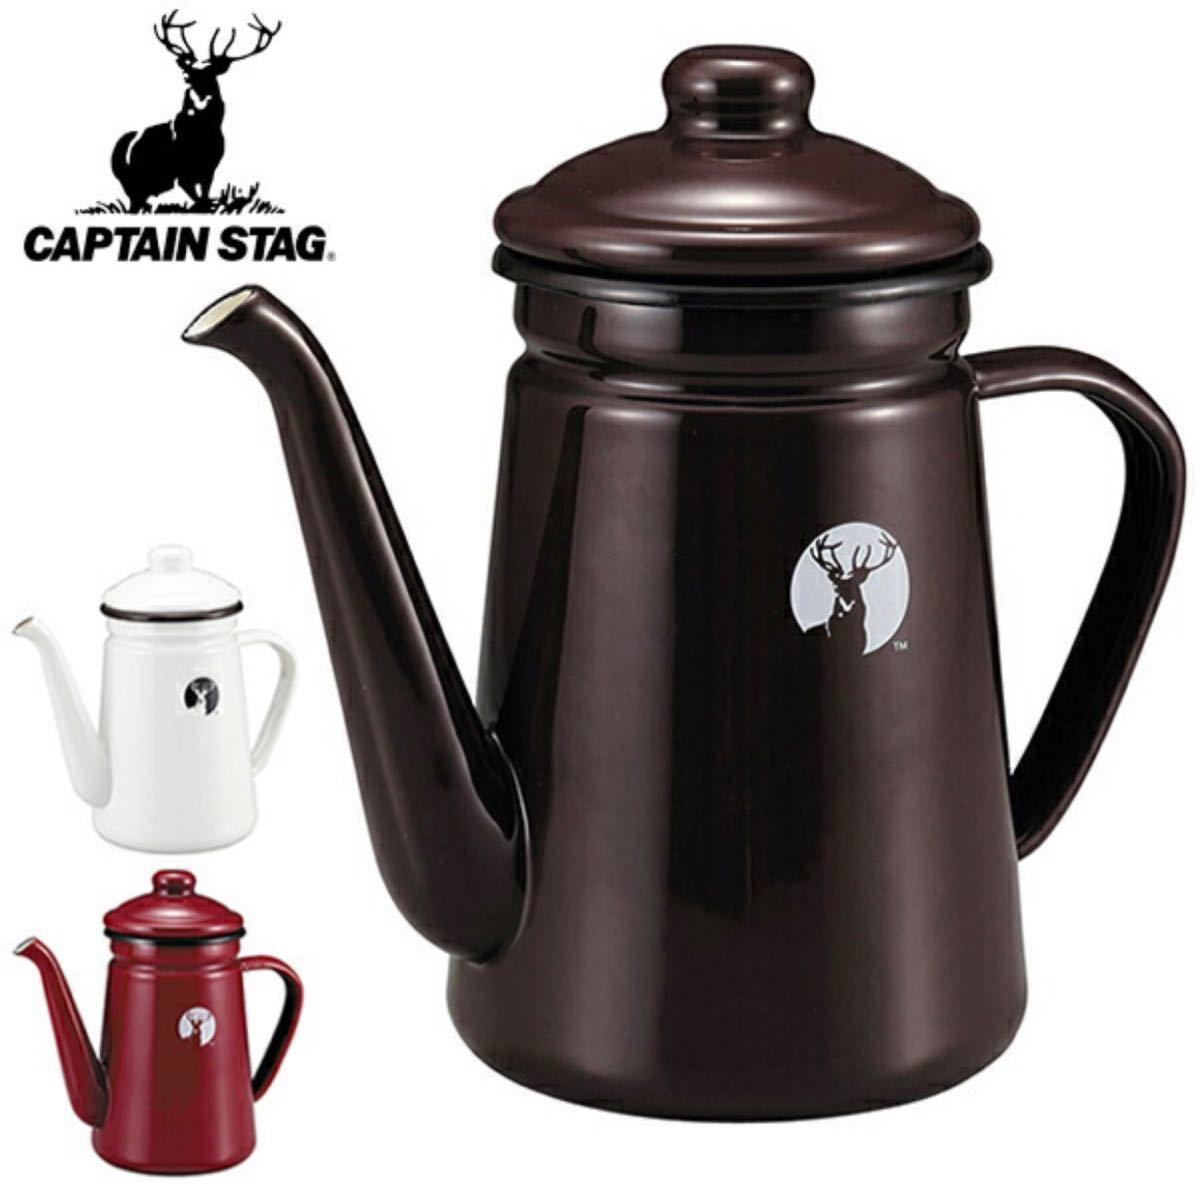 キャプテンスタッグ(CAPTAIN STAG) ホーロー コーヒーポット 1.1L ブラウン